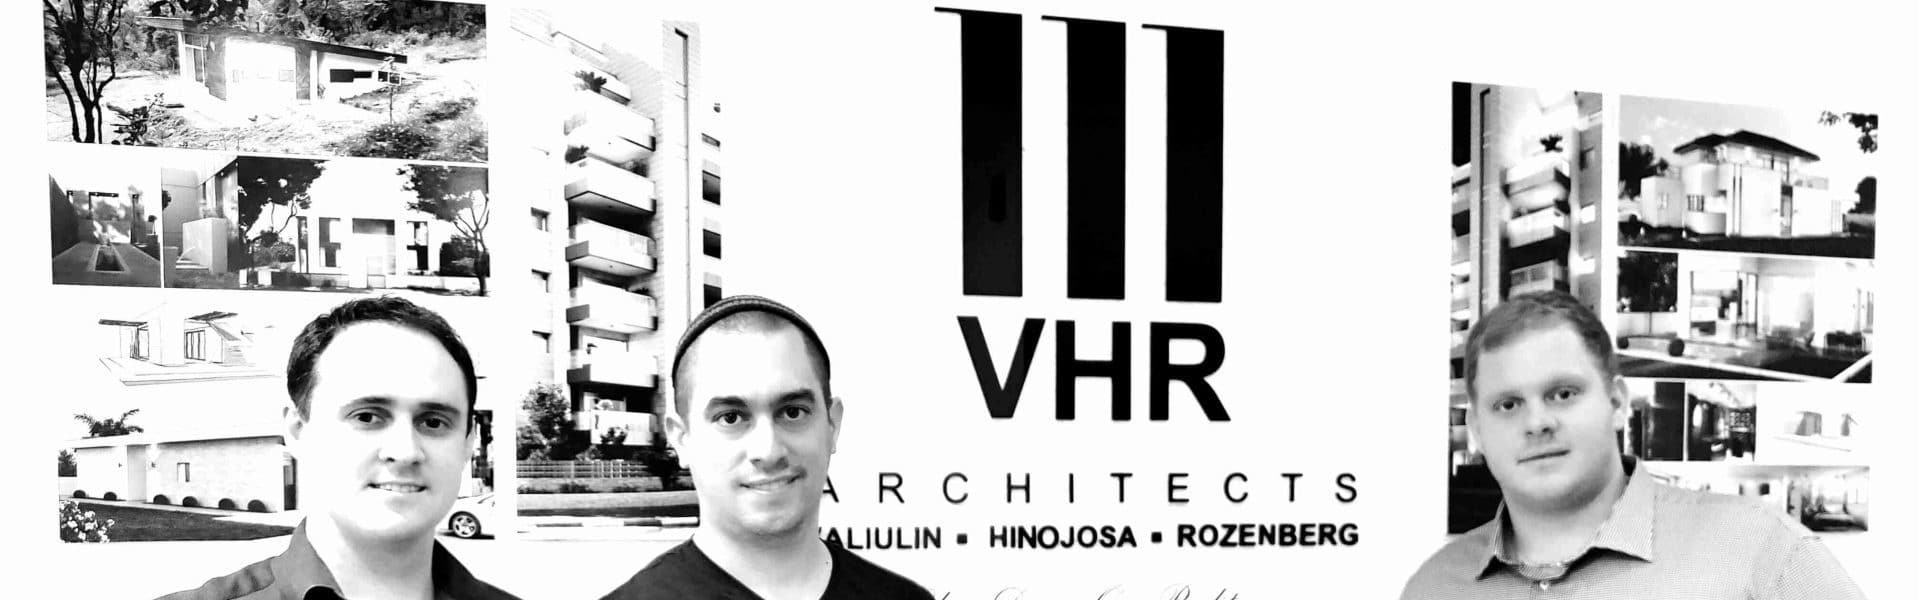 VHR-ARCHITECTS-LTD